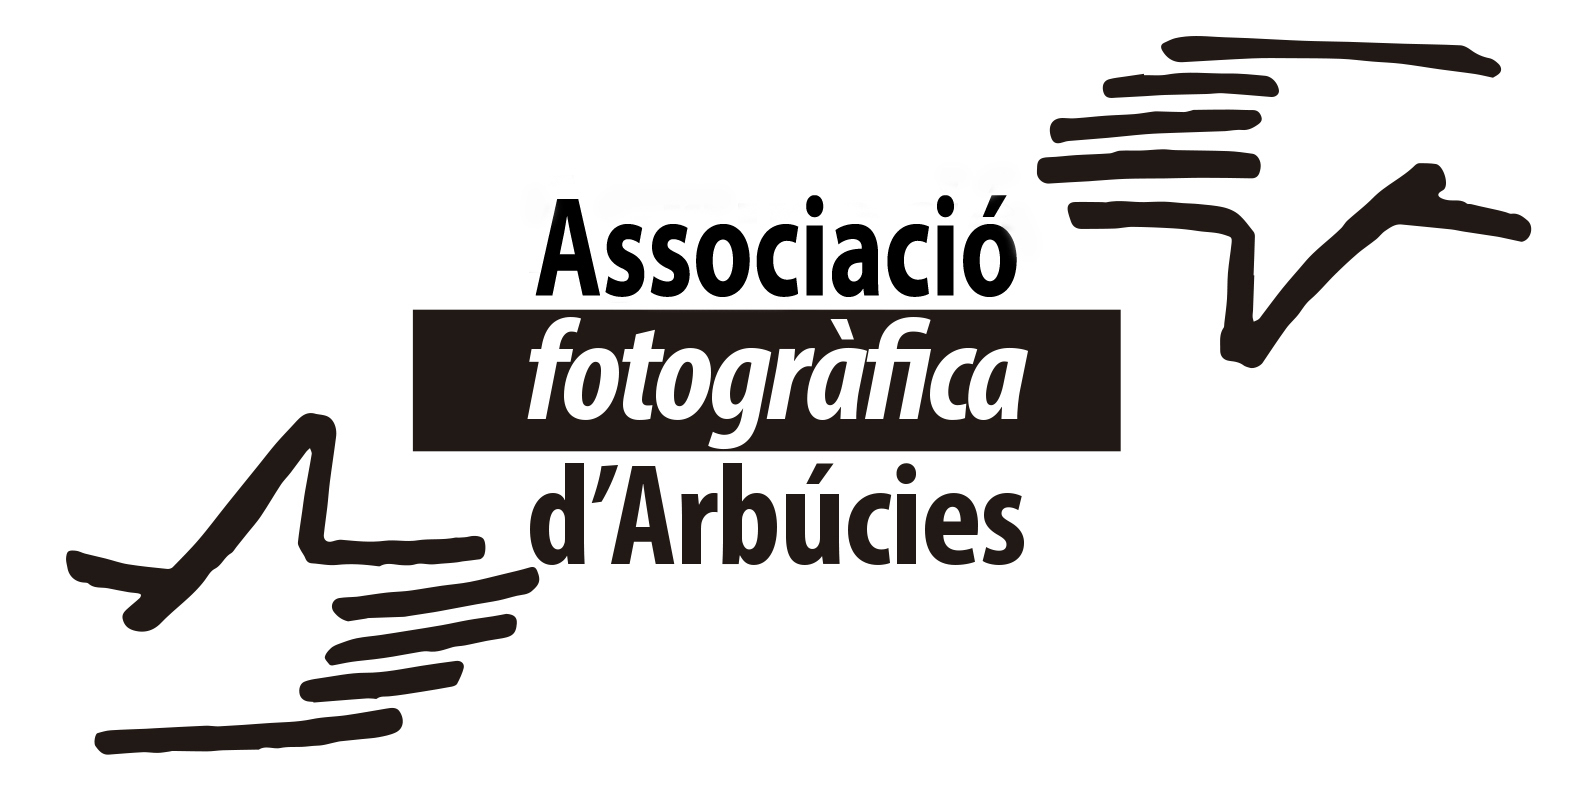 Associació fotogràfica d'Arbúcies